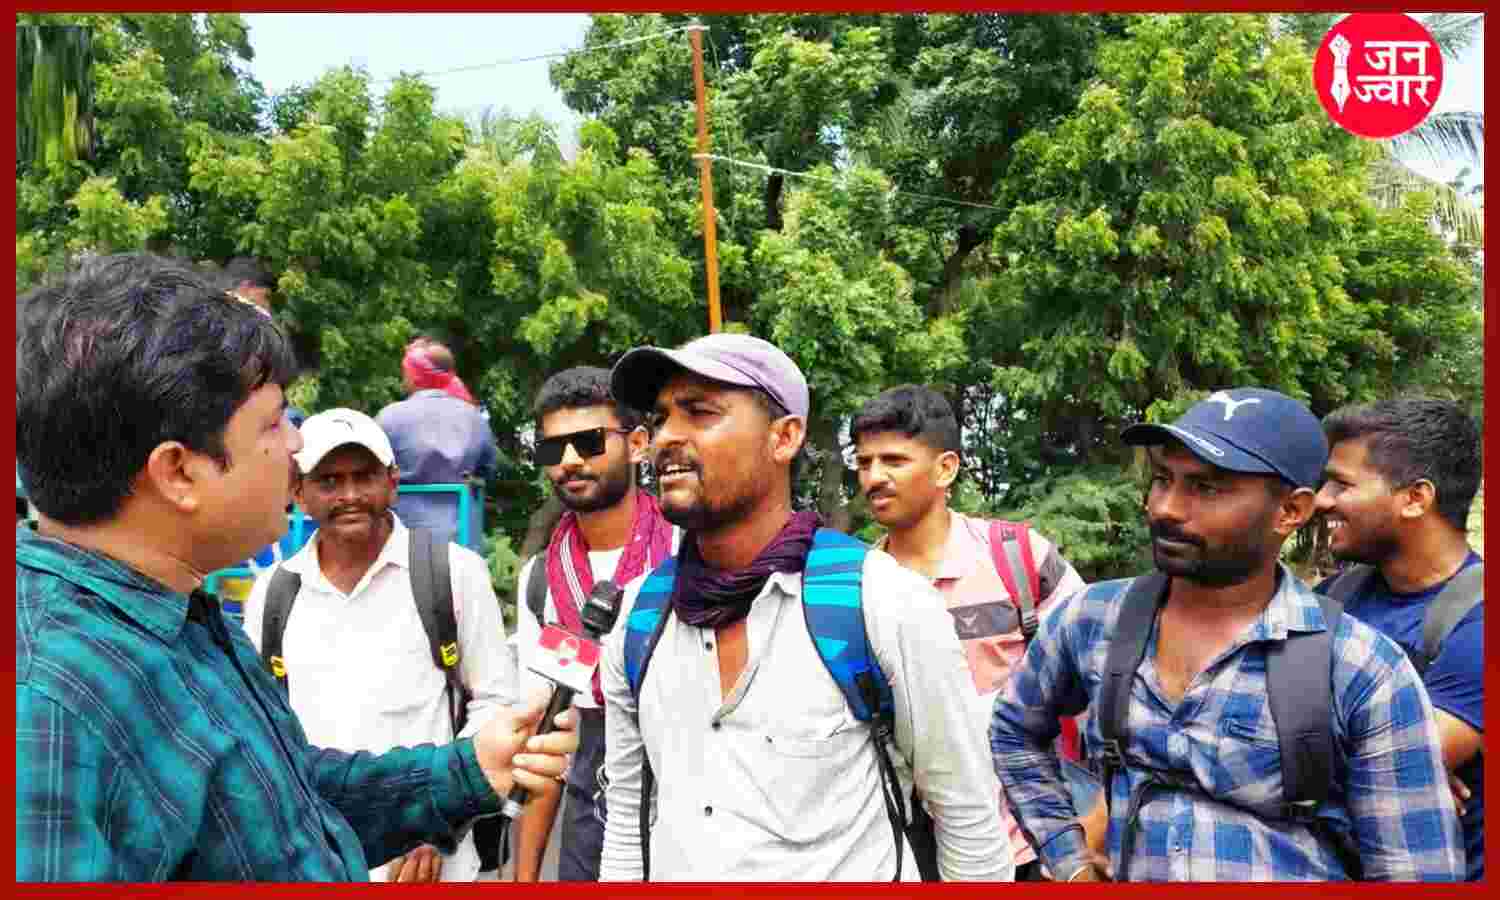 Ground Report : गुजरात में अंधविश्वास में डूबे हजारों युवा, आंदोलन-संघर्ष और जन मुद्दों से नहीं है कोई वास्ता